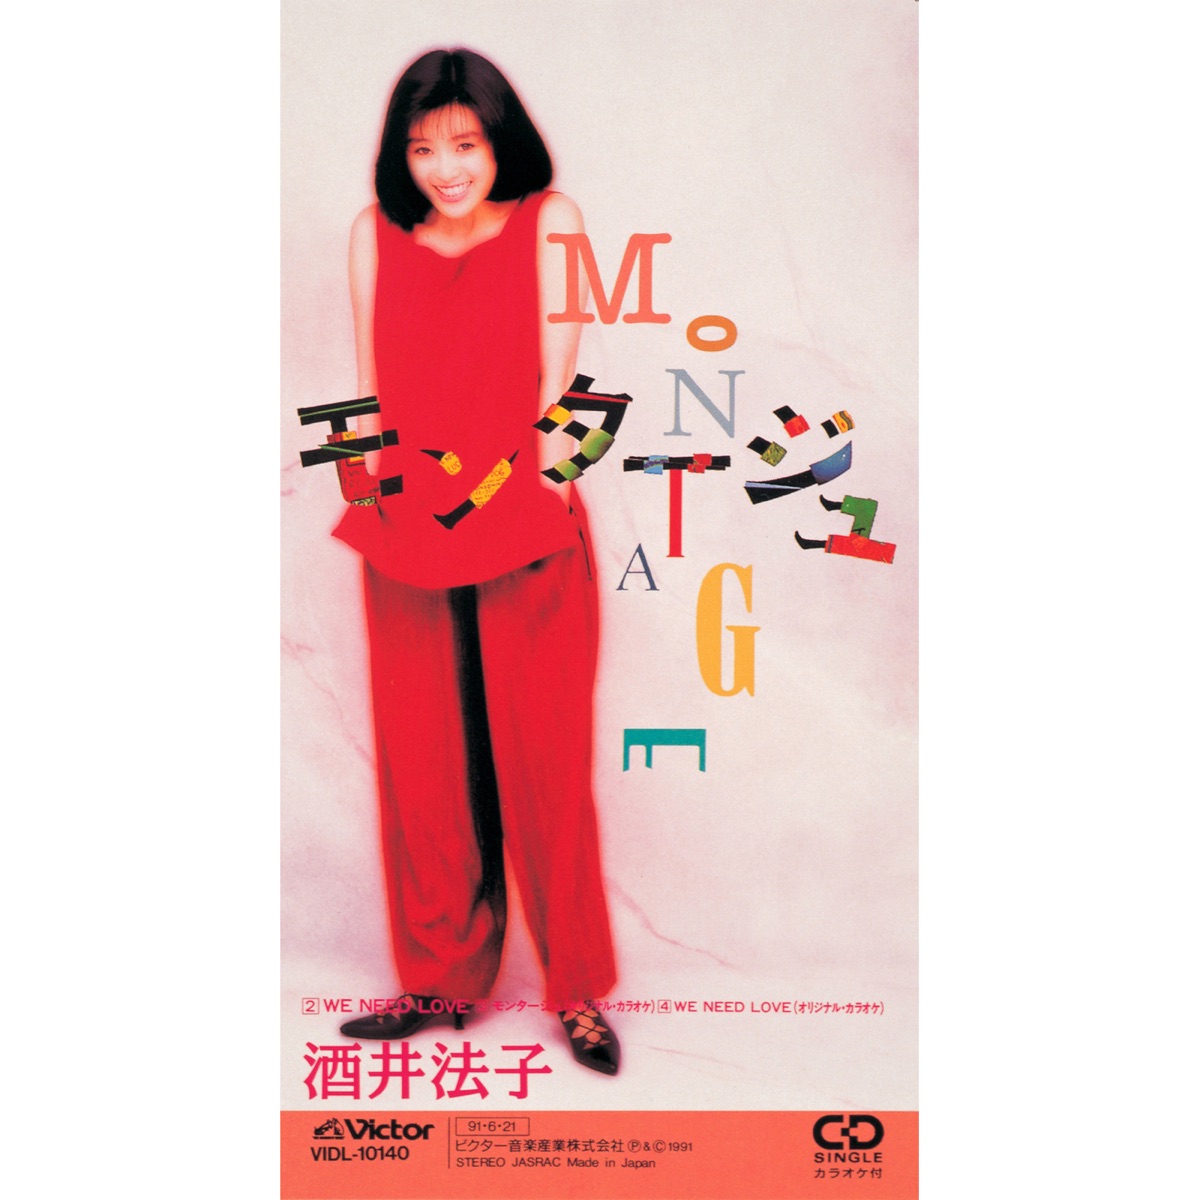 酒井法子 - モンタージュ - EP (1991) [iTunes Plus AAC M4A]-新房子